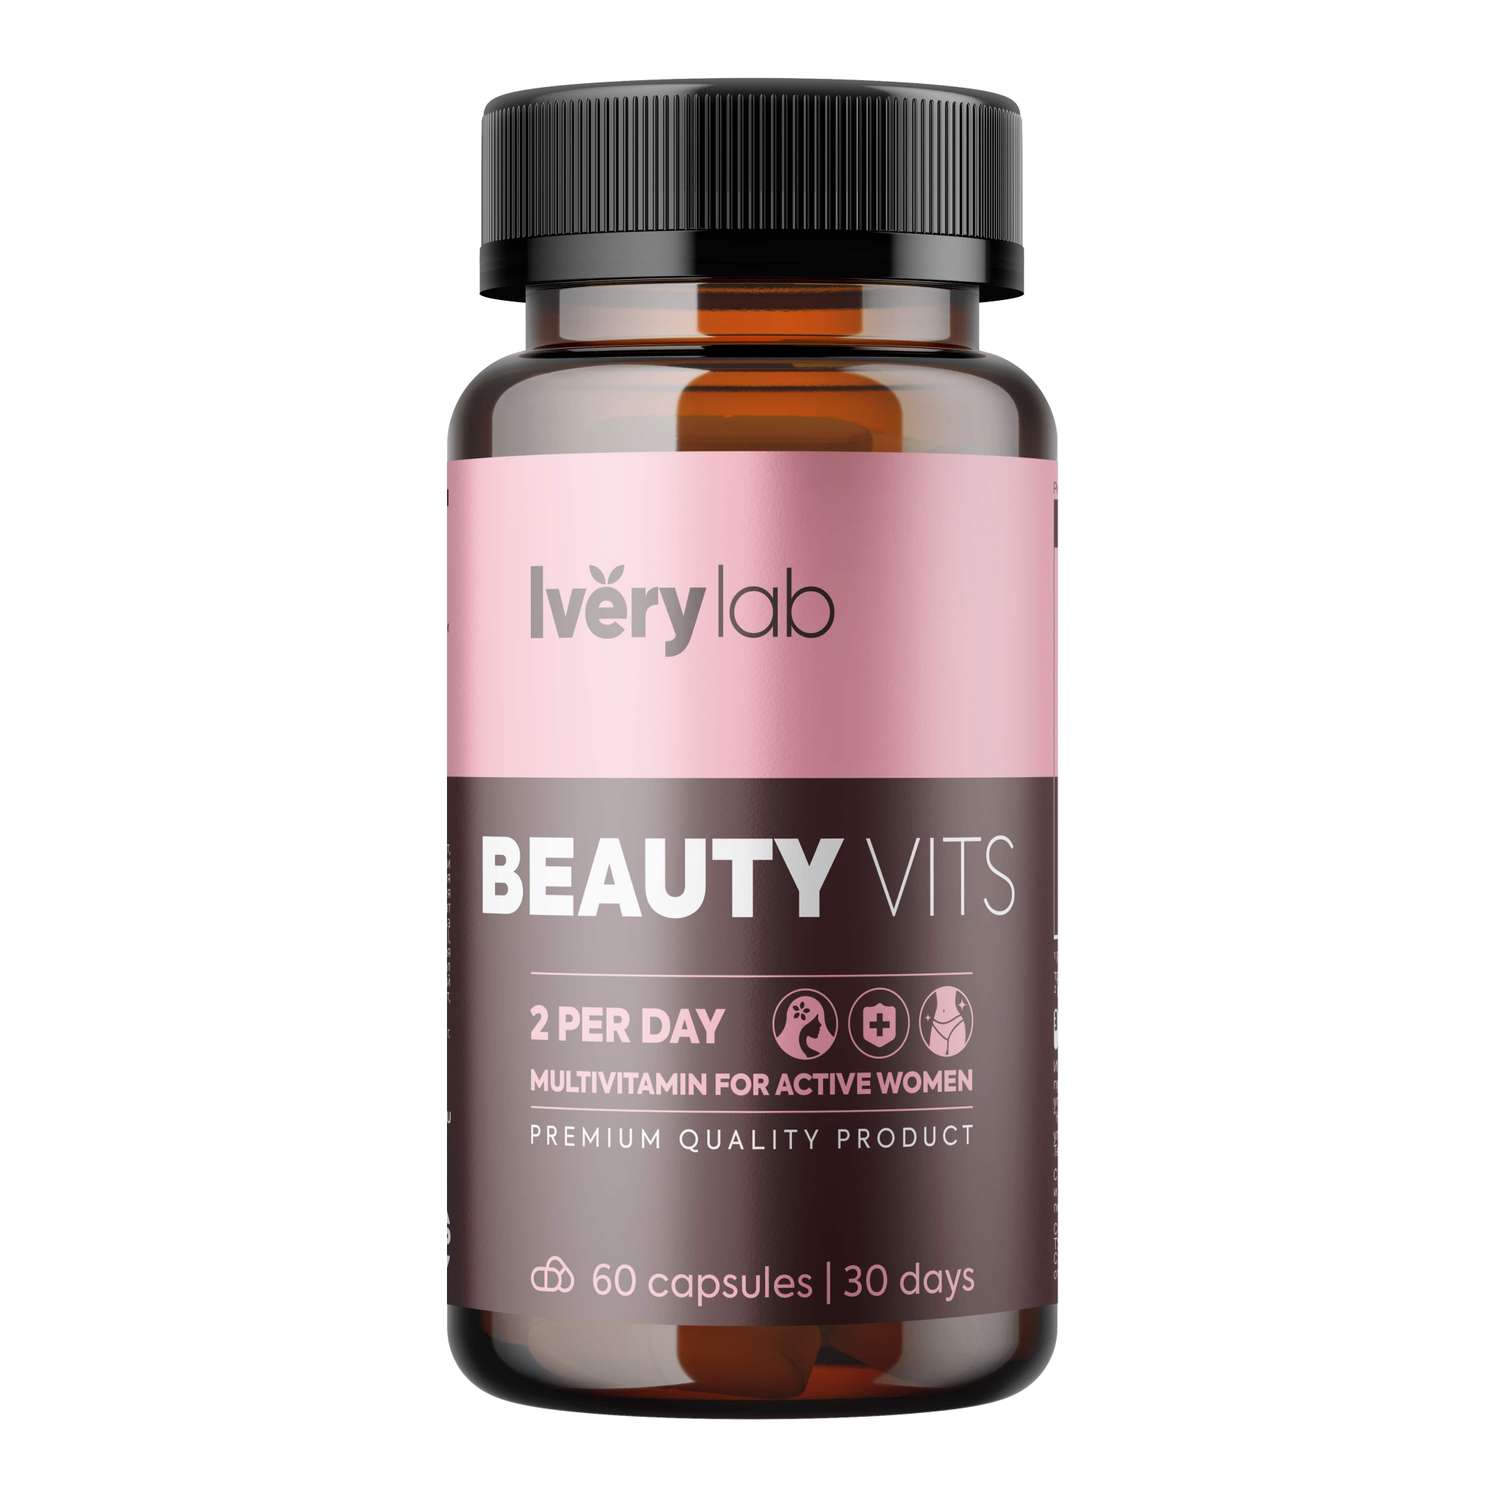 БАД Iverylab Женский витаминно-минеральный комплекс для красоты и здоровья Beauty Vits - фото 1